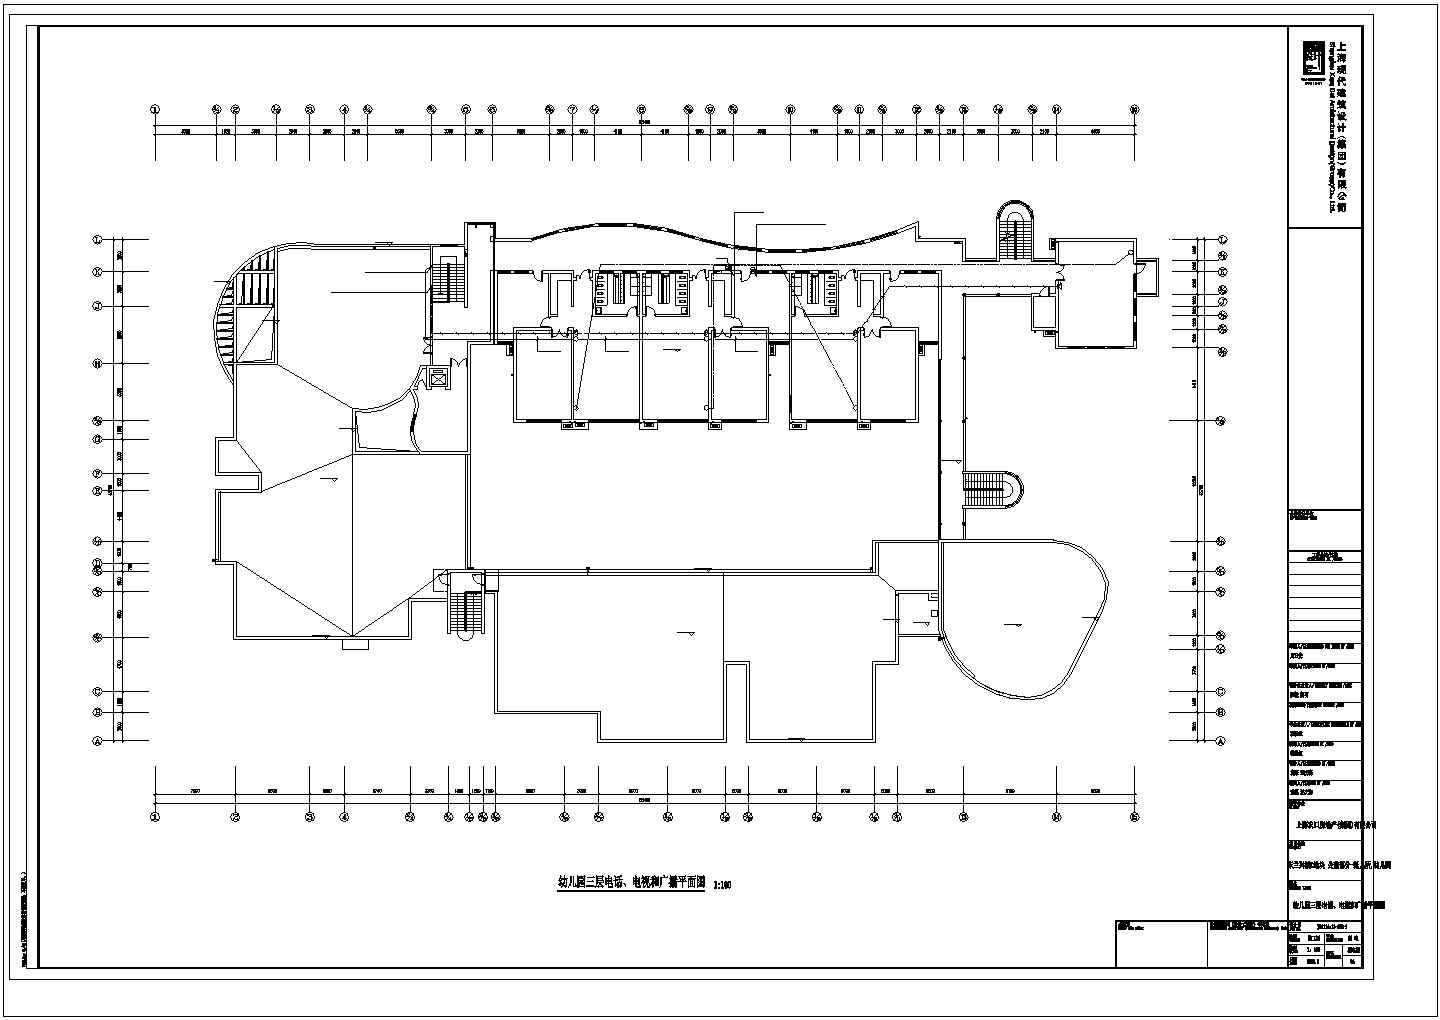 烟台市某社区幼儿园3层教学楼全套电气系统建筑设计CAD图纸